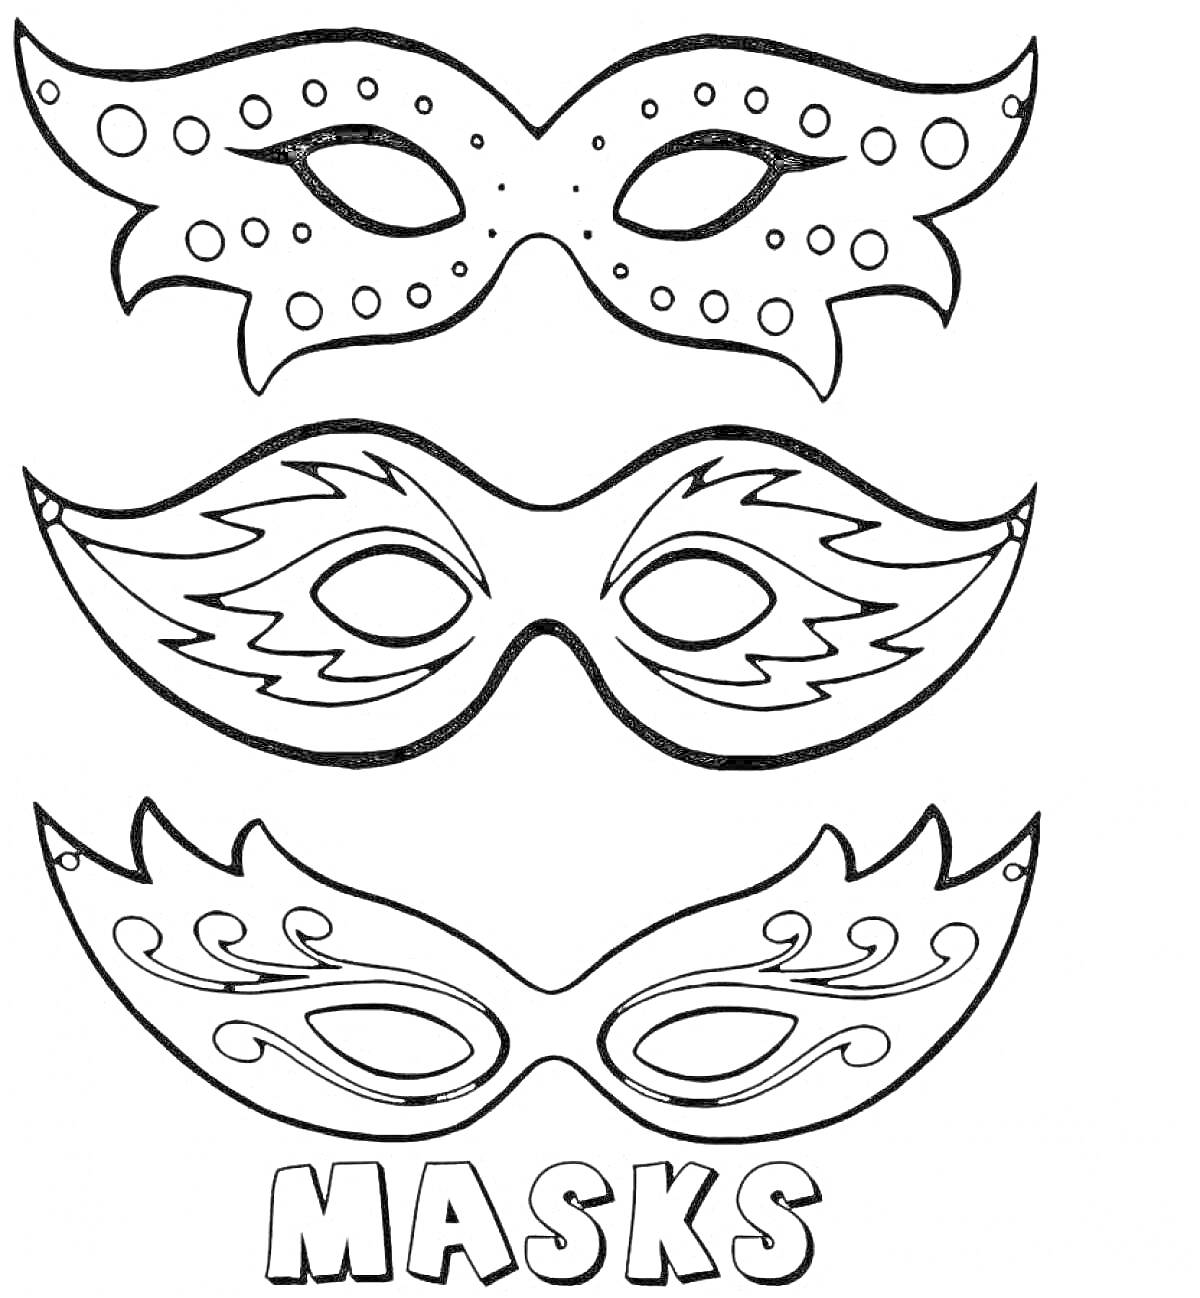 Раскраска Театральные маски: маска с круглыми украшениями, маска с острыми углами и маска с изогнутыми деталями, текст 